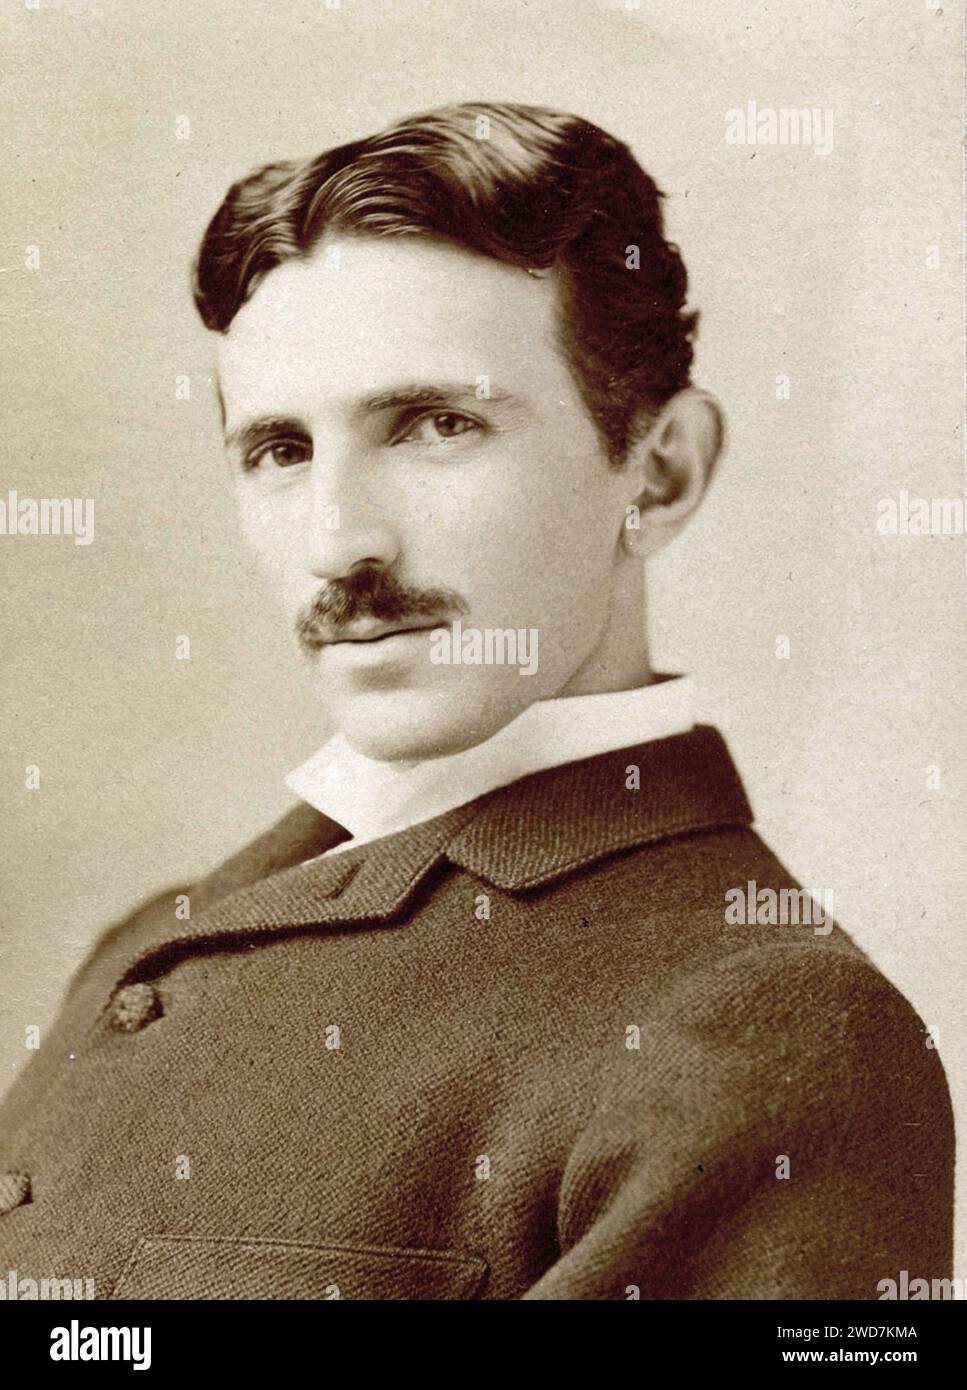 Porträt von Nikola Tesla von Sarony, um 1895 - Sepia-Ton Stockfoto